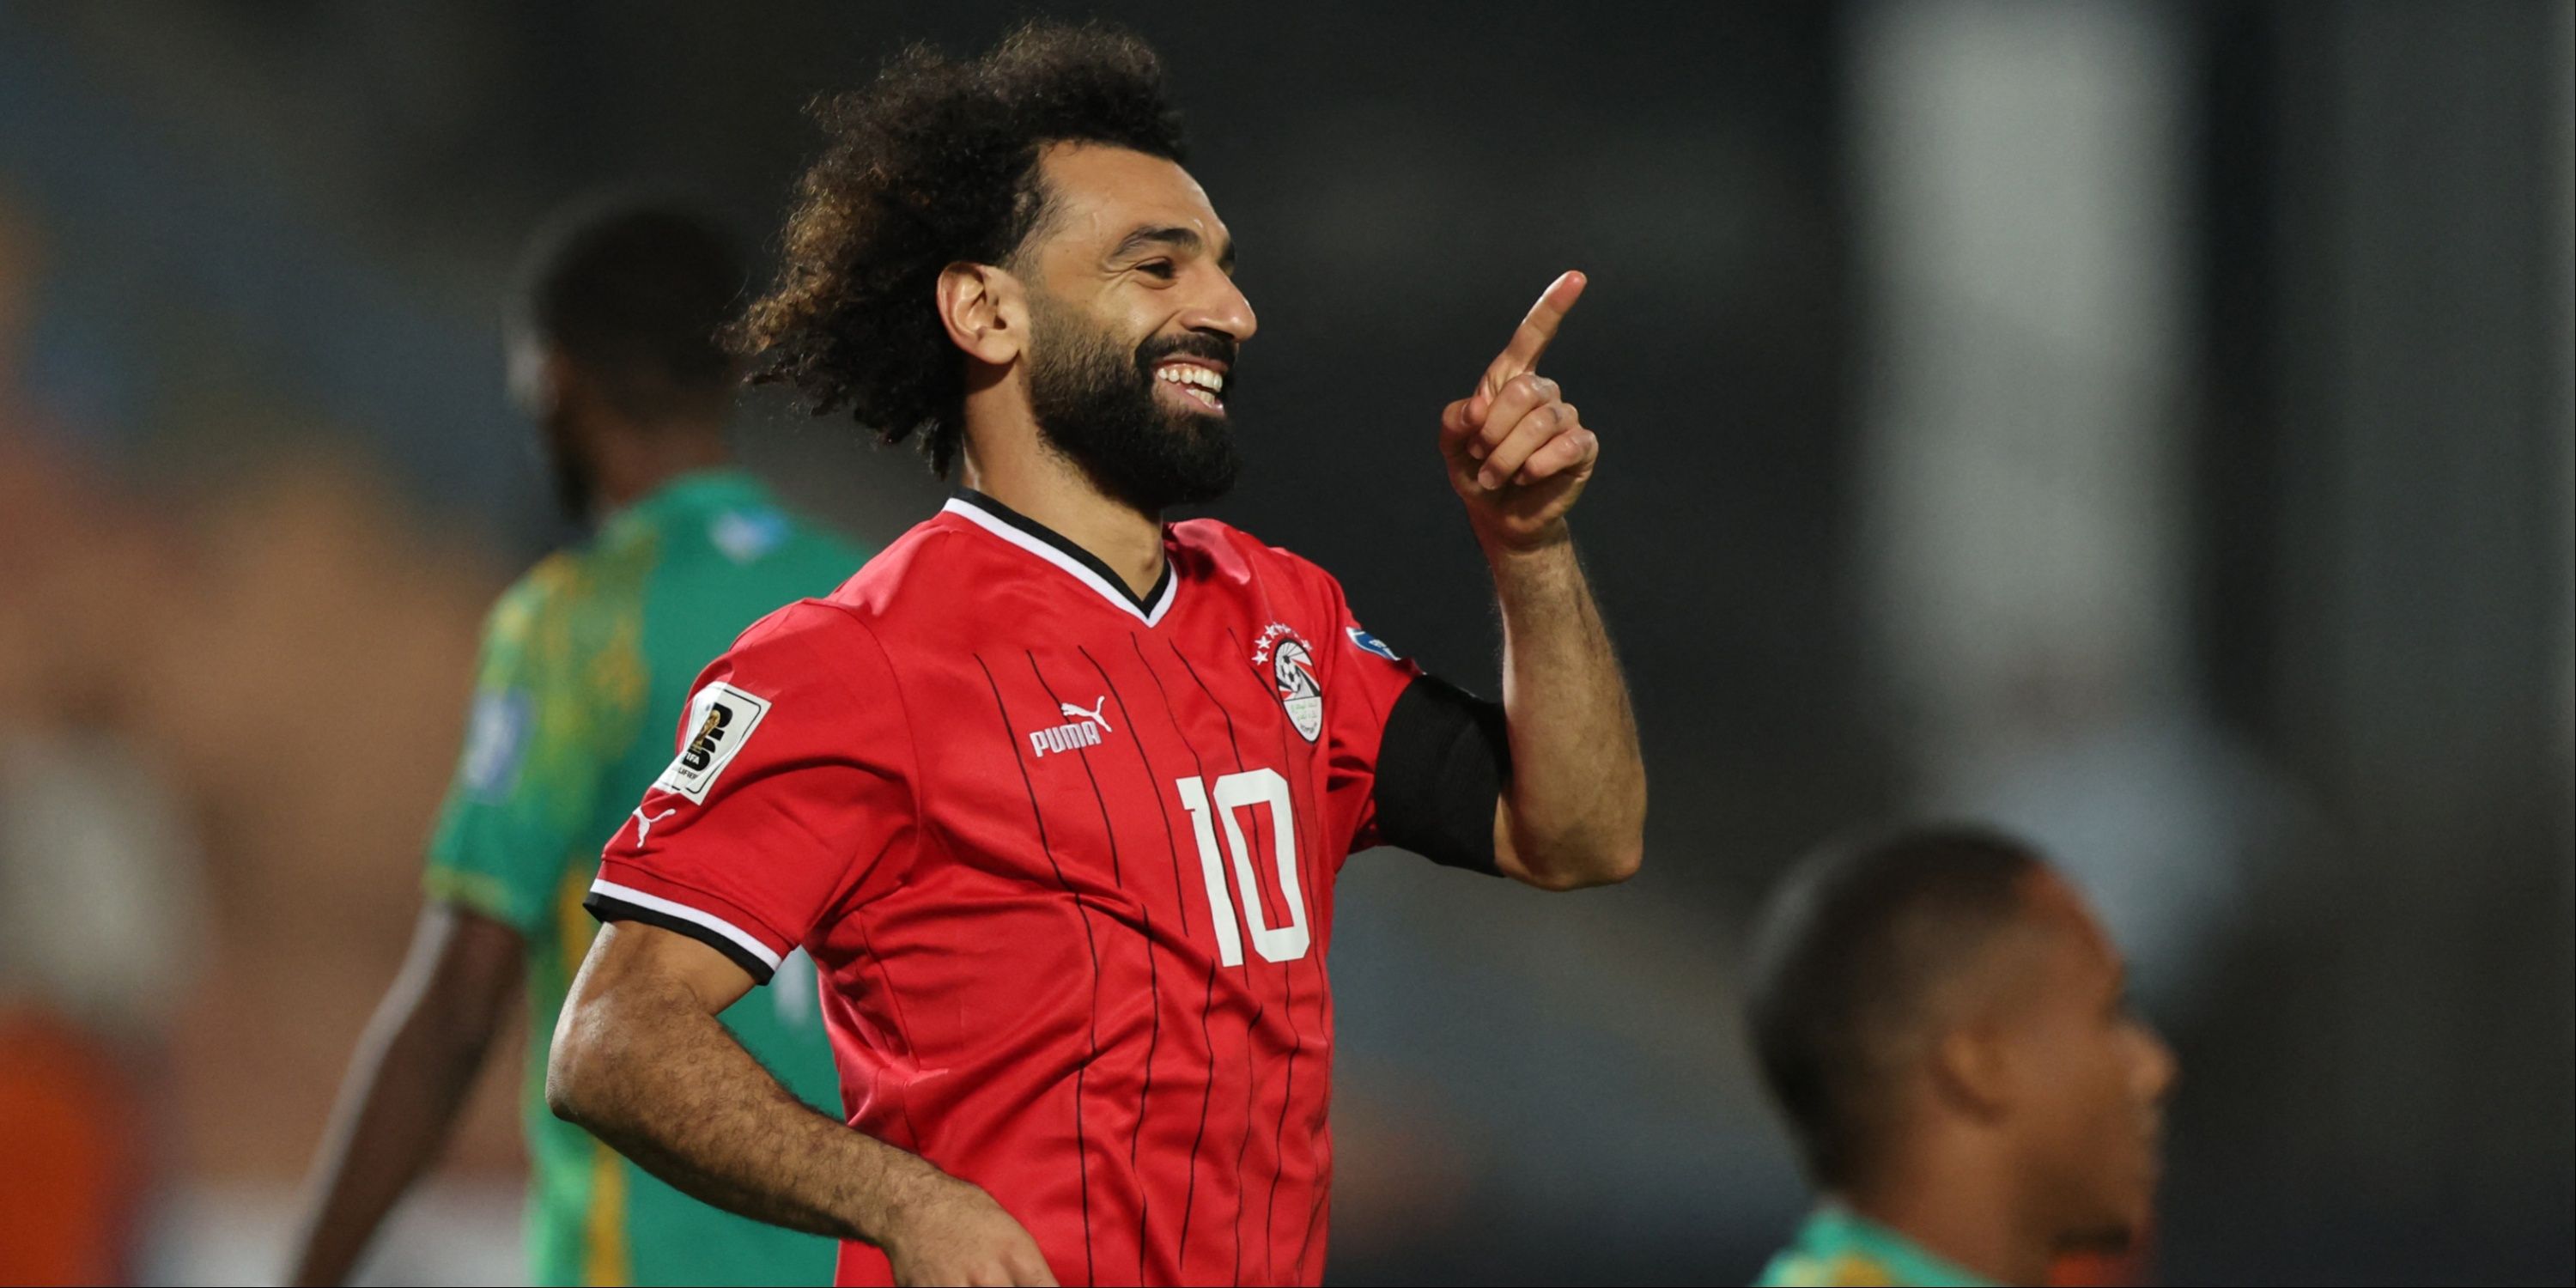 Mohamed Salah celebrates scoring for Egypt.